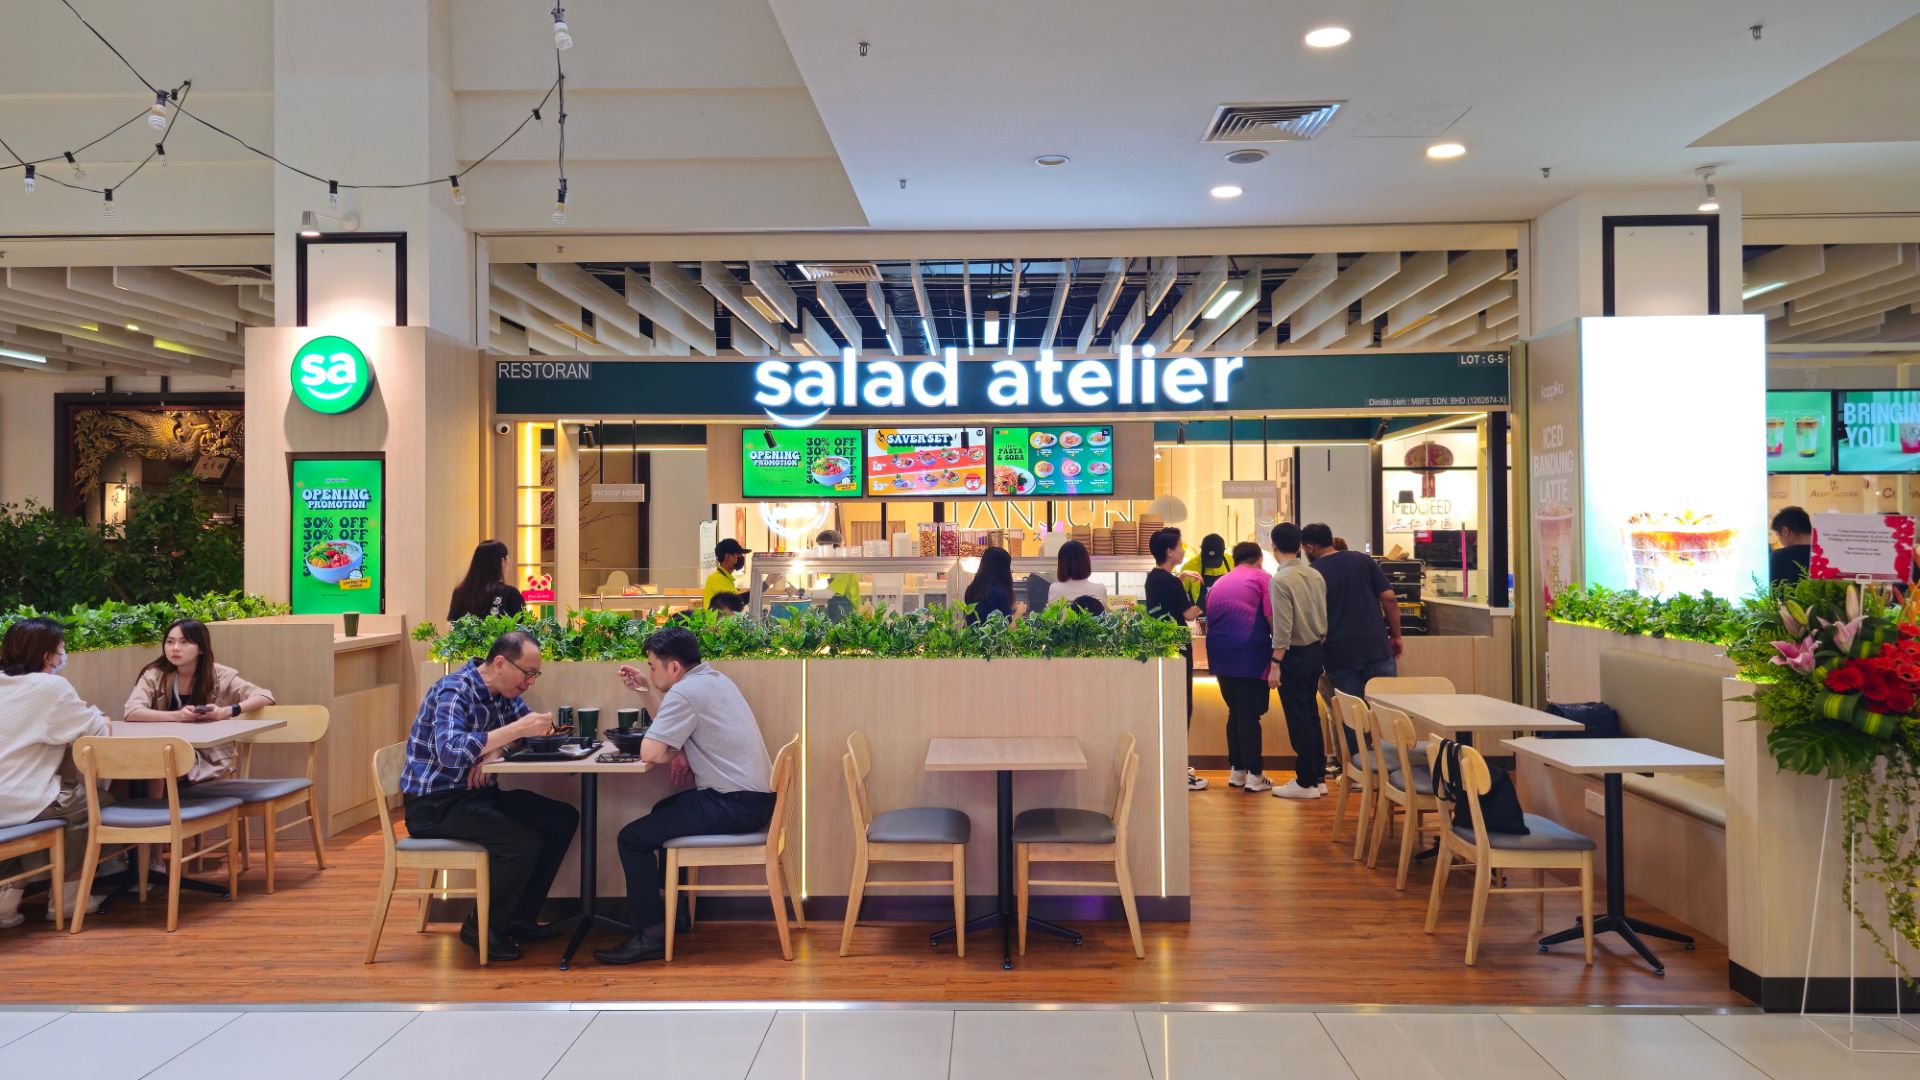 People eating healthy foods at Salad Atelier (Jaya One).